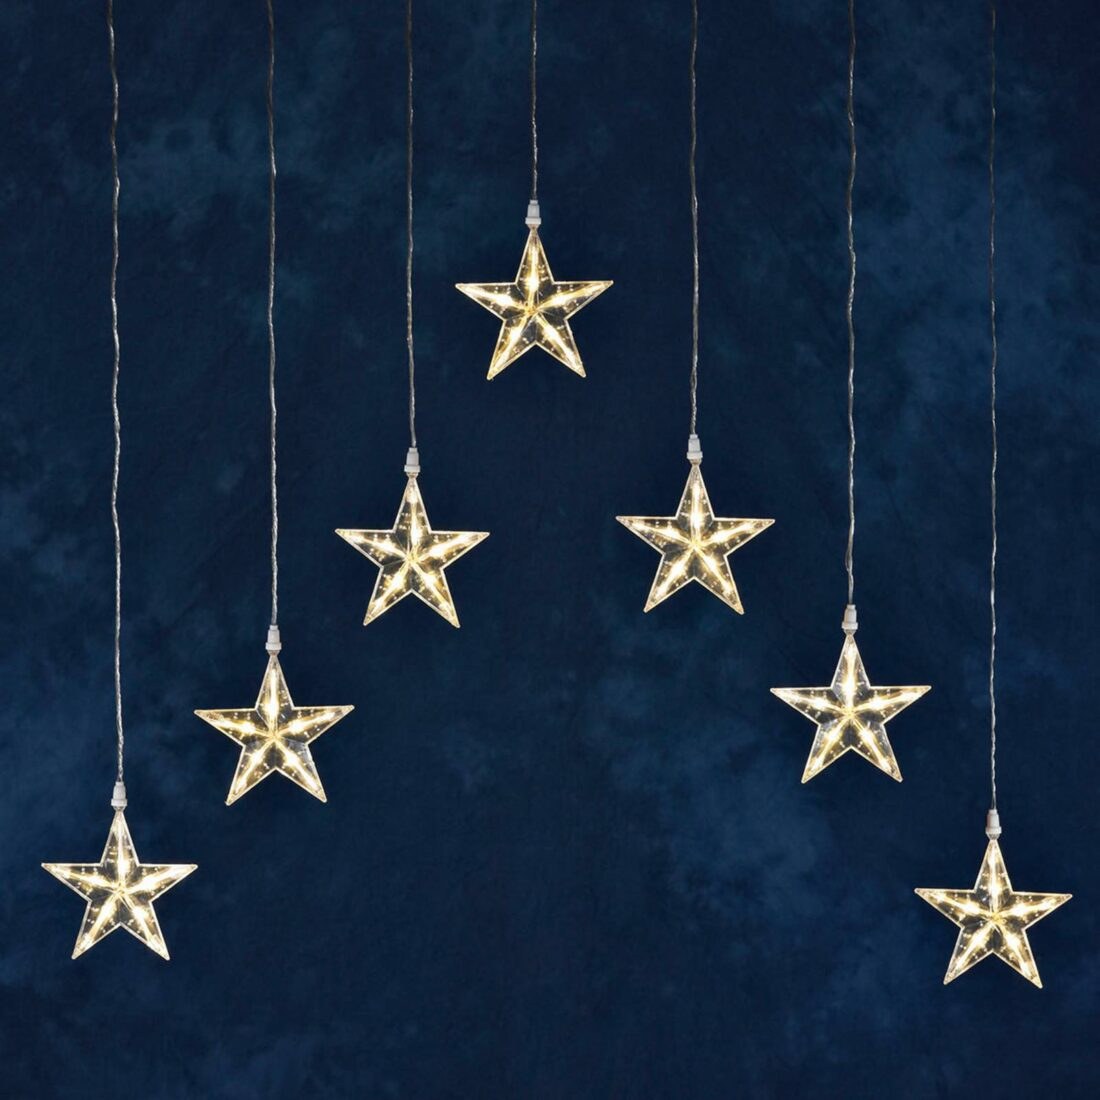 Konstsmide Christmas Světelný závěs LED se 7 hvězdami